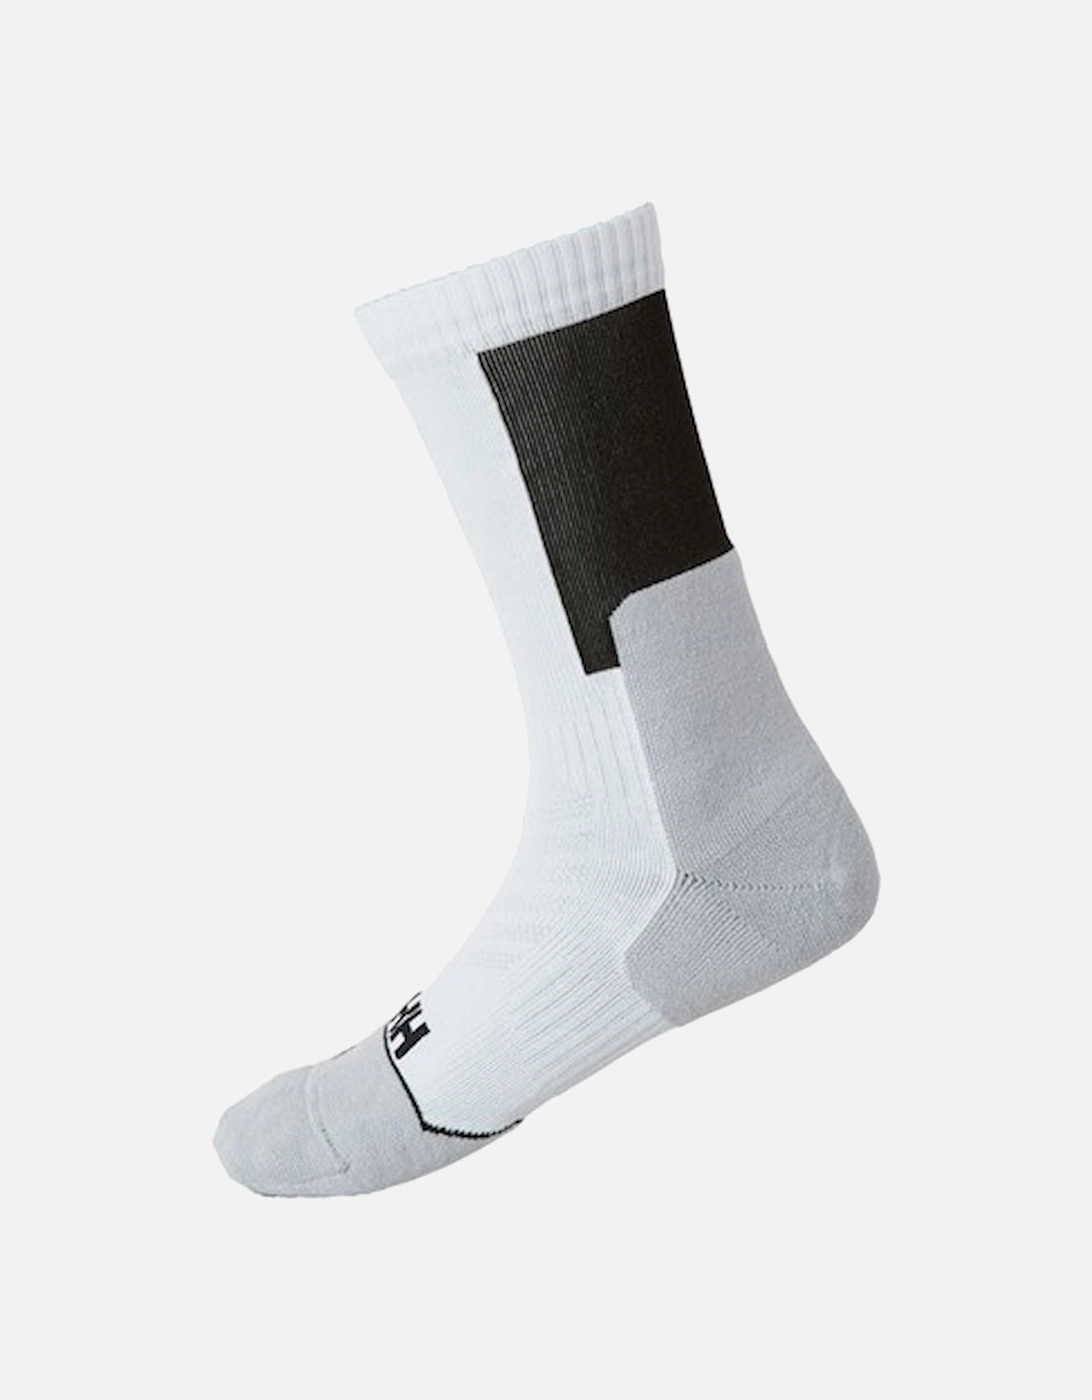 Men's Hiking Sock Technical White, 2 of 1